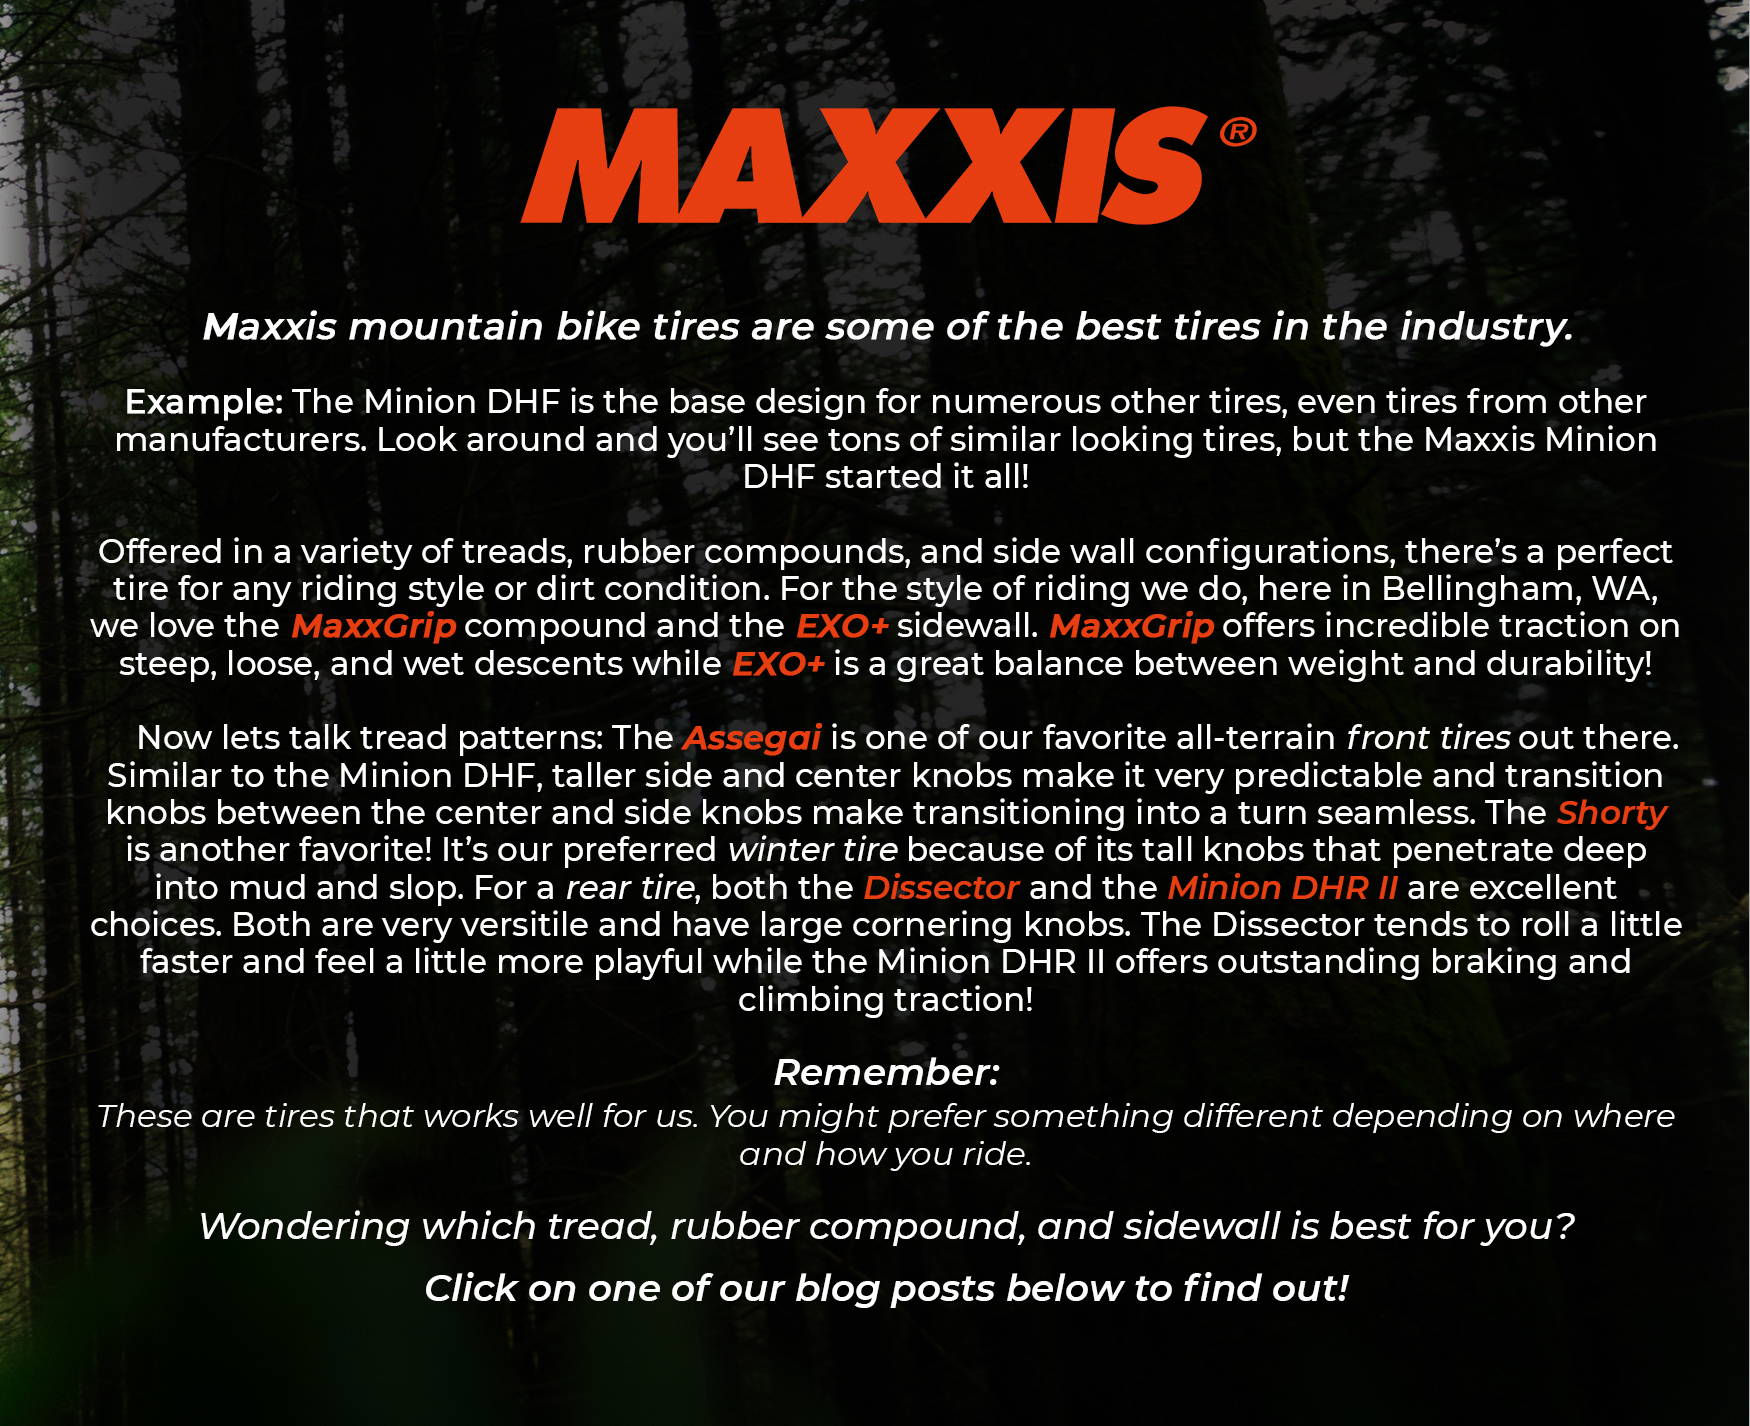 maxxis mtb tires description